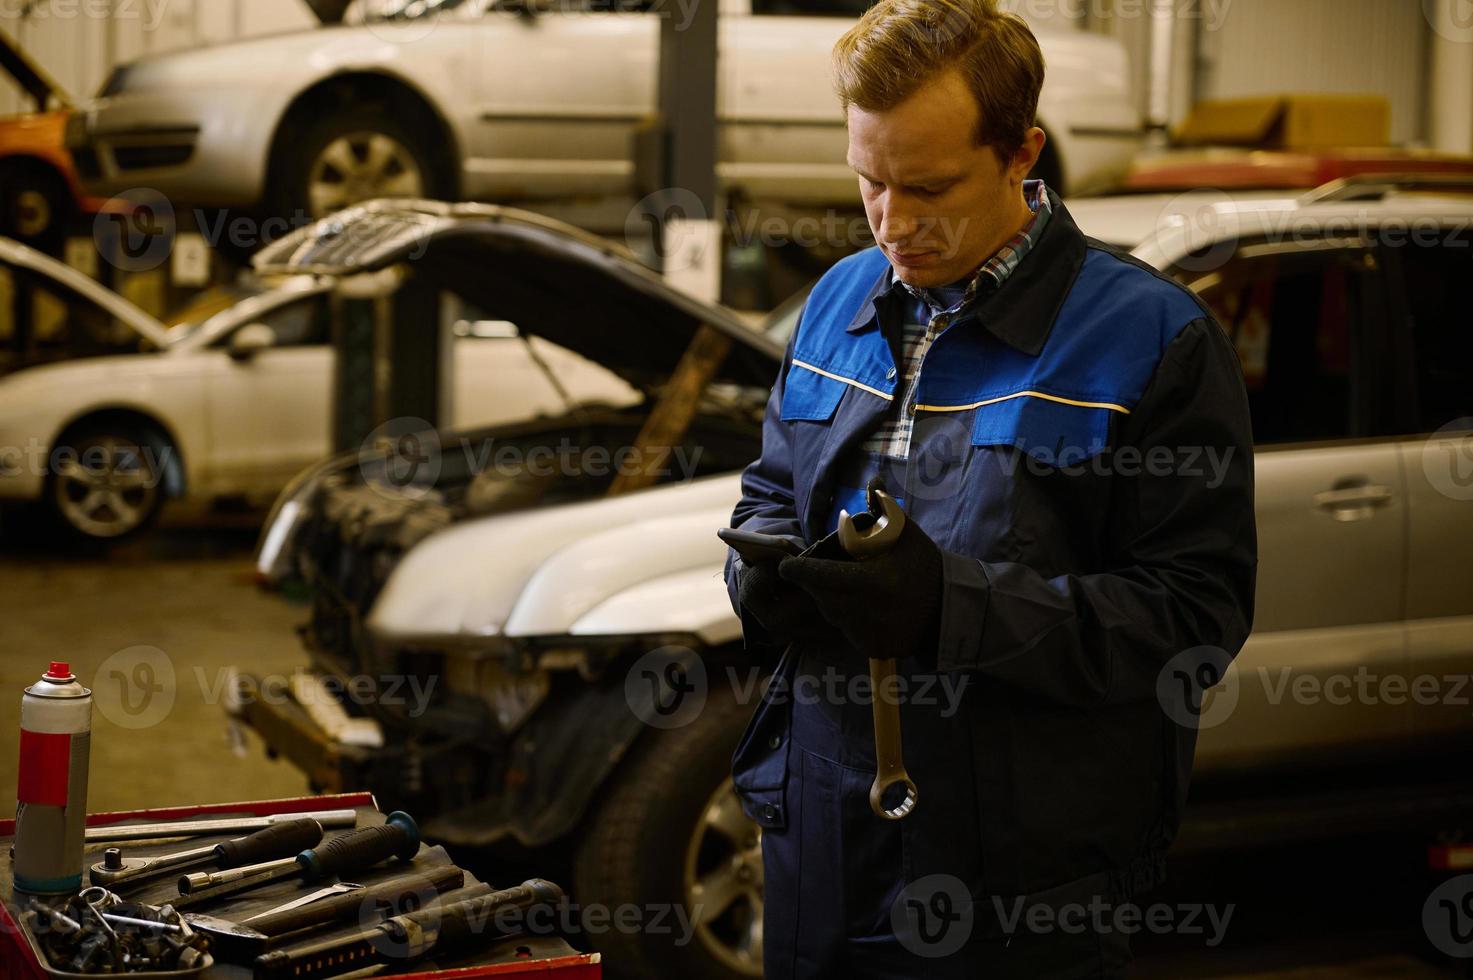 technicien, mécanicien dans professionnel uniforme avec clé à réparation magasin. voiture garantie réparation et entretien concept photo